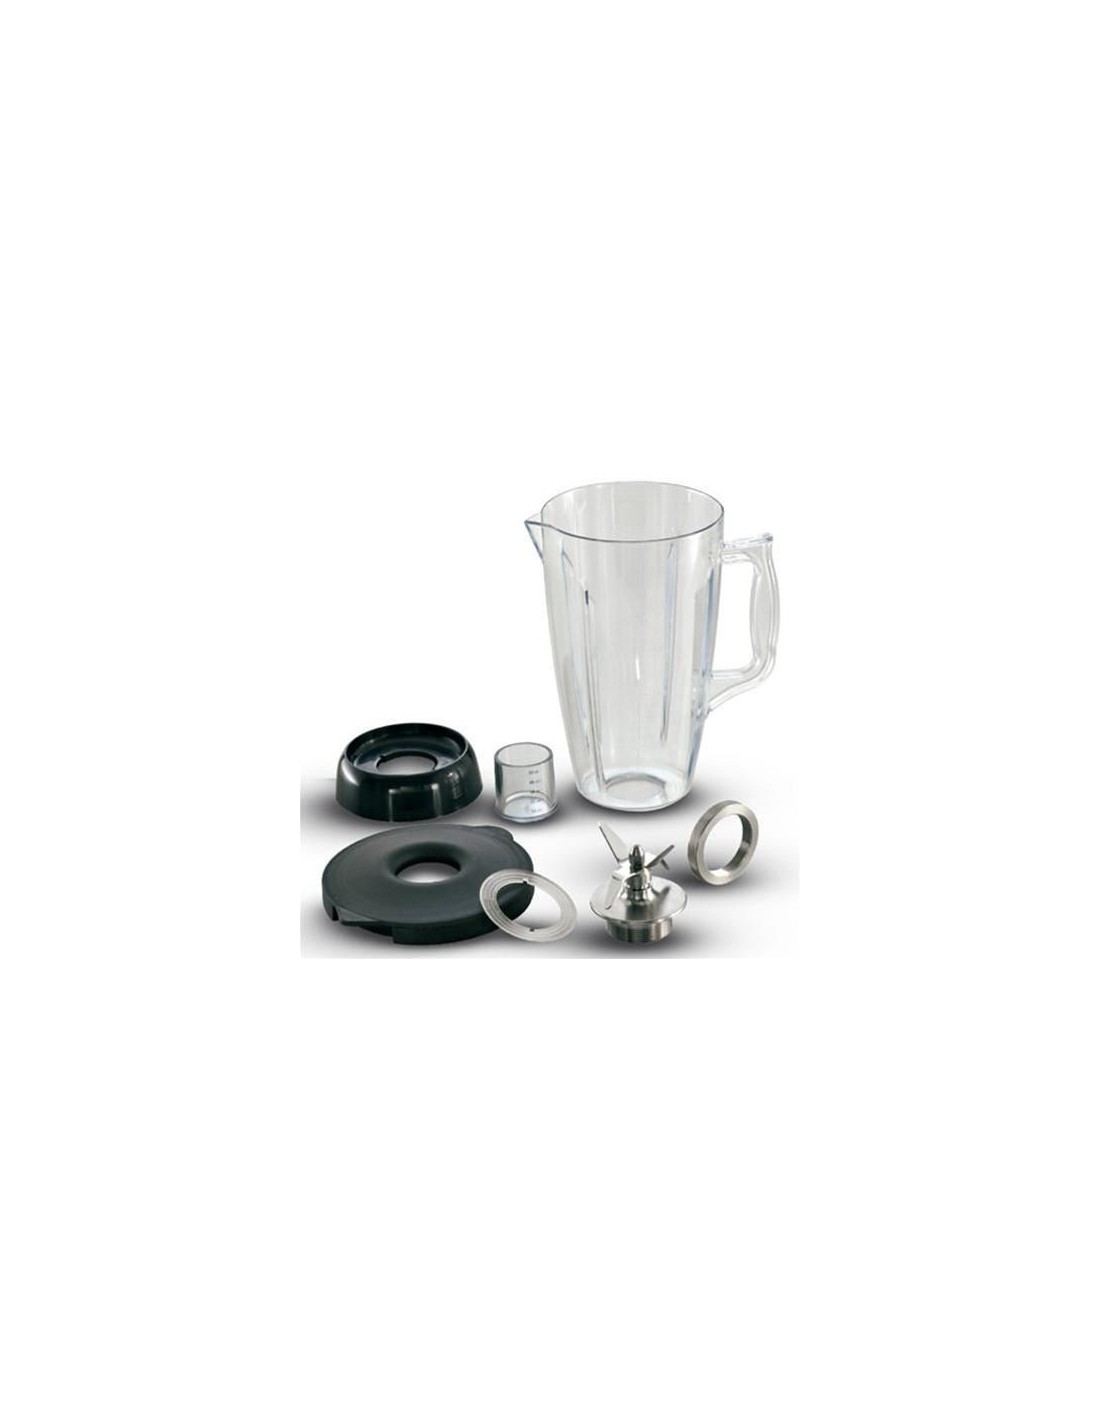 Bicchiere tondo in policarbonato completo di base e coperchio - Per modello Jumbomixer